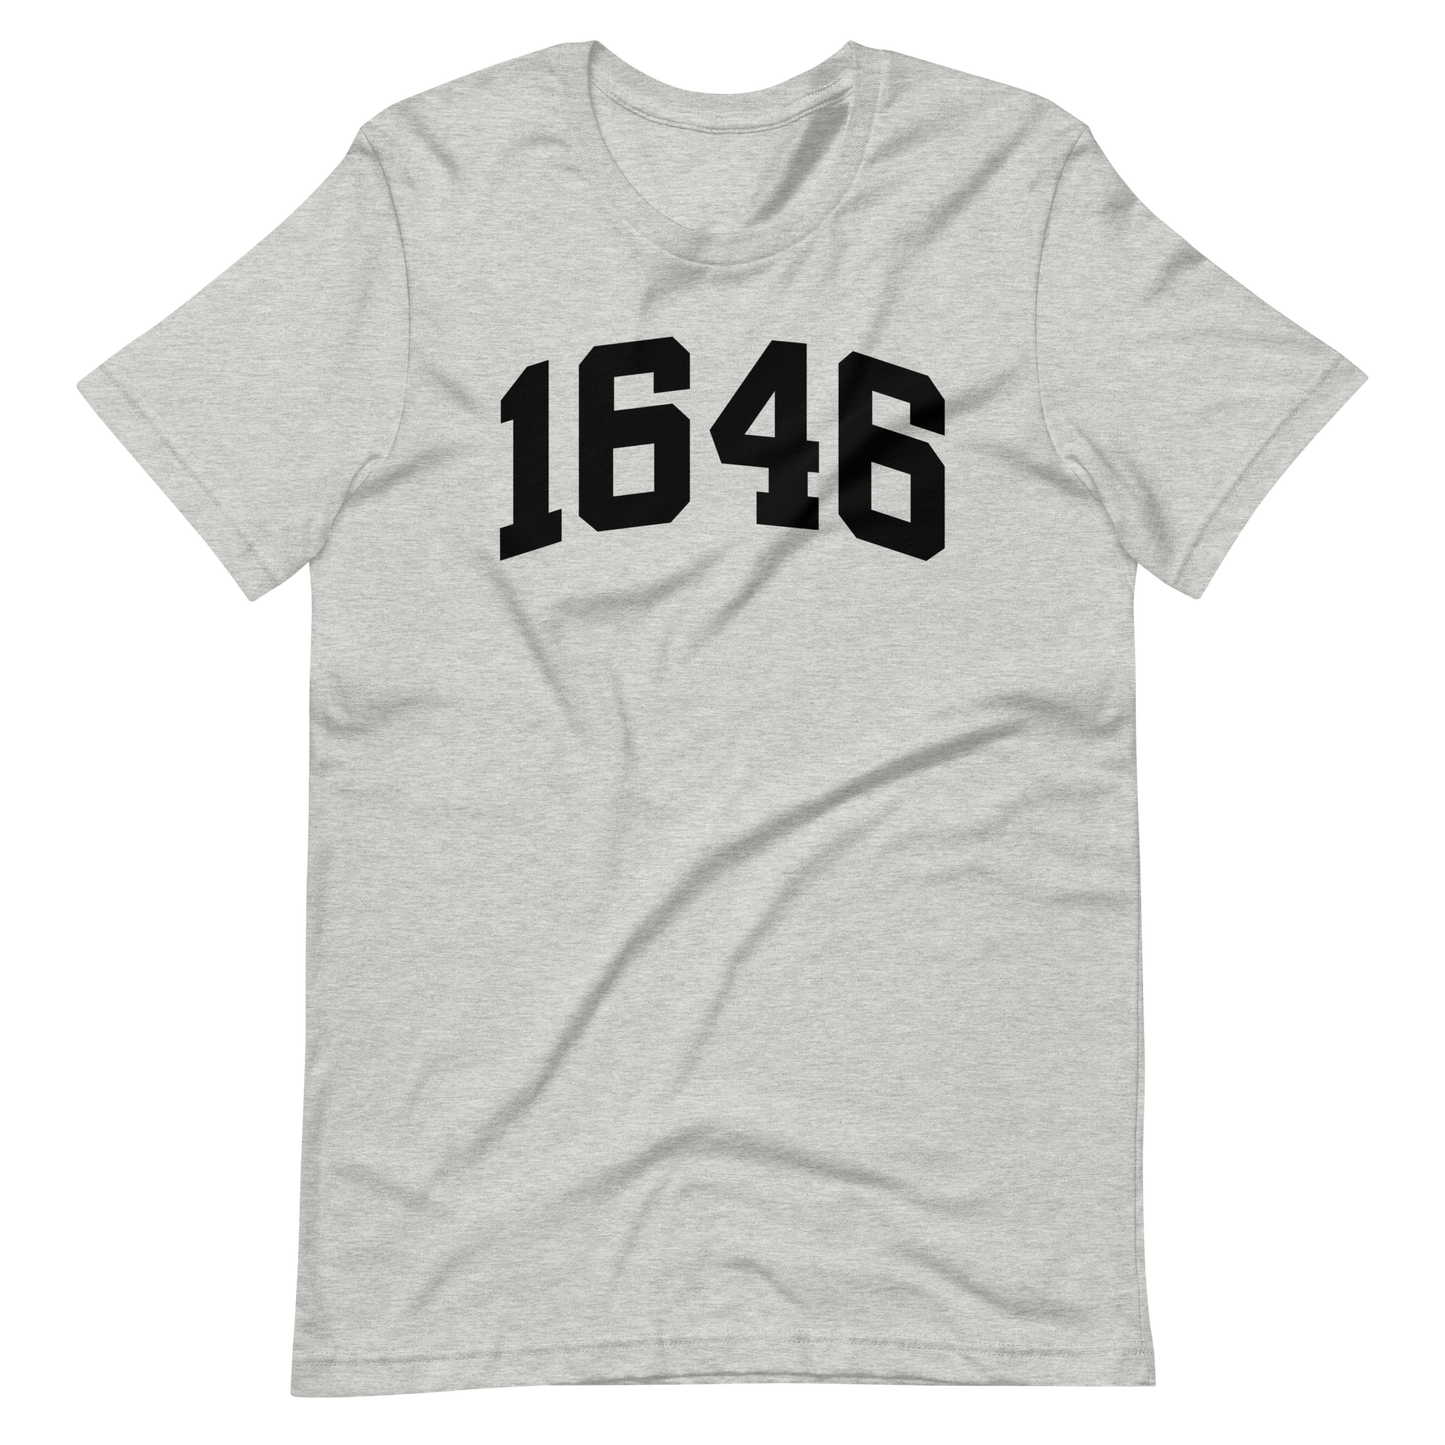 1646 T-Shirt